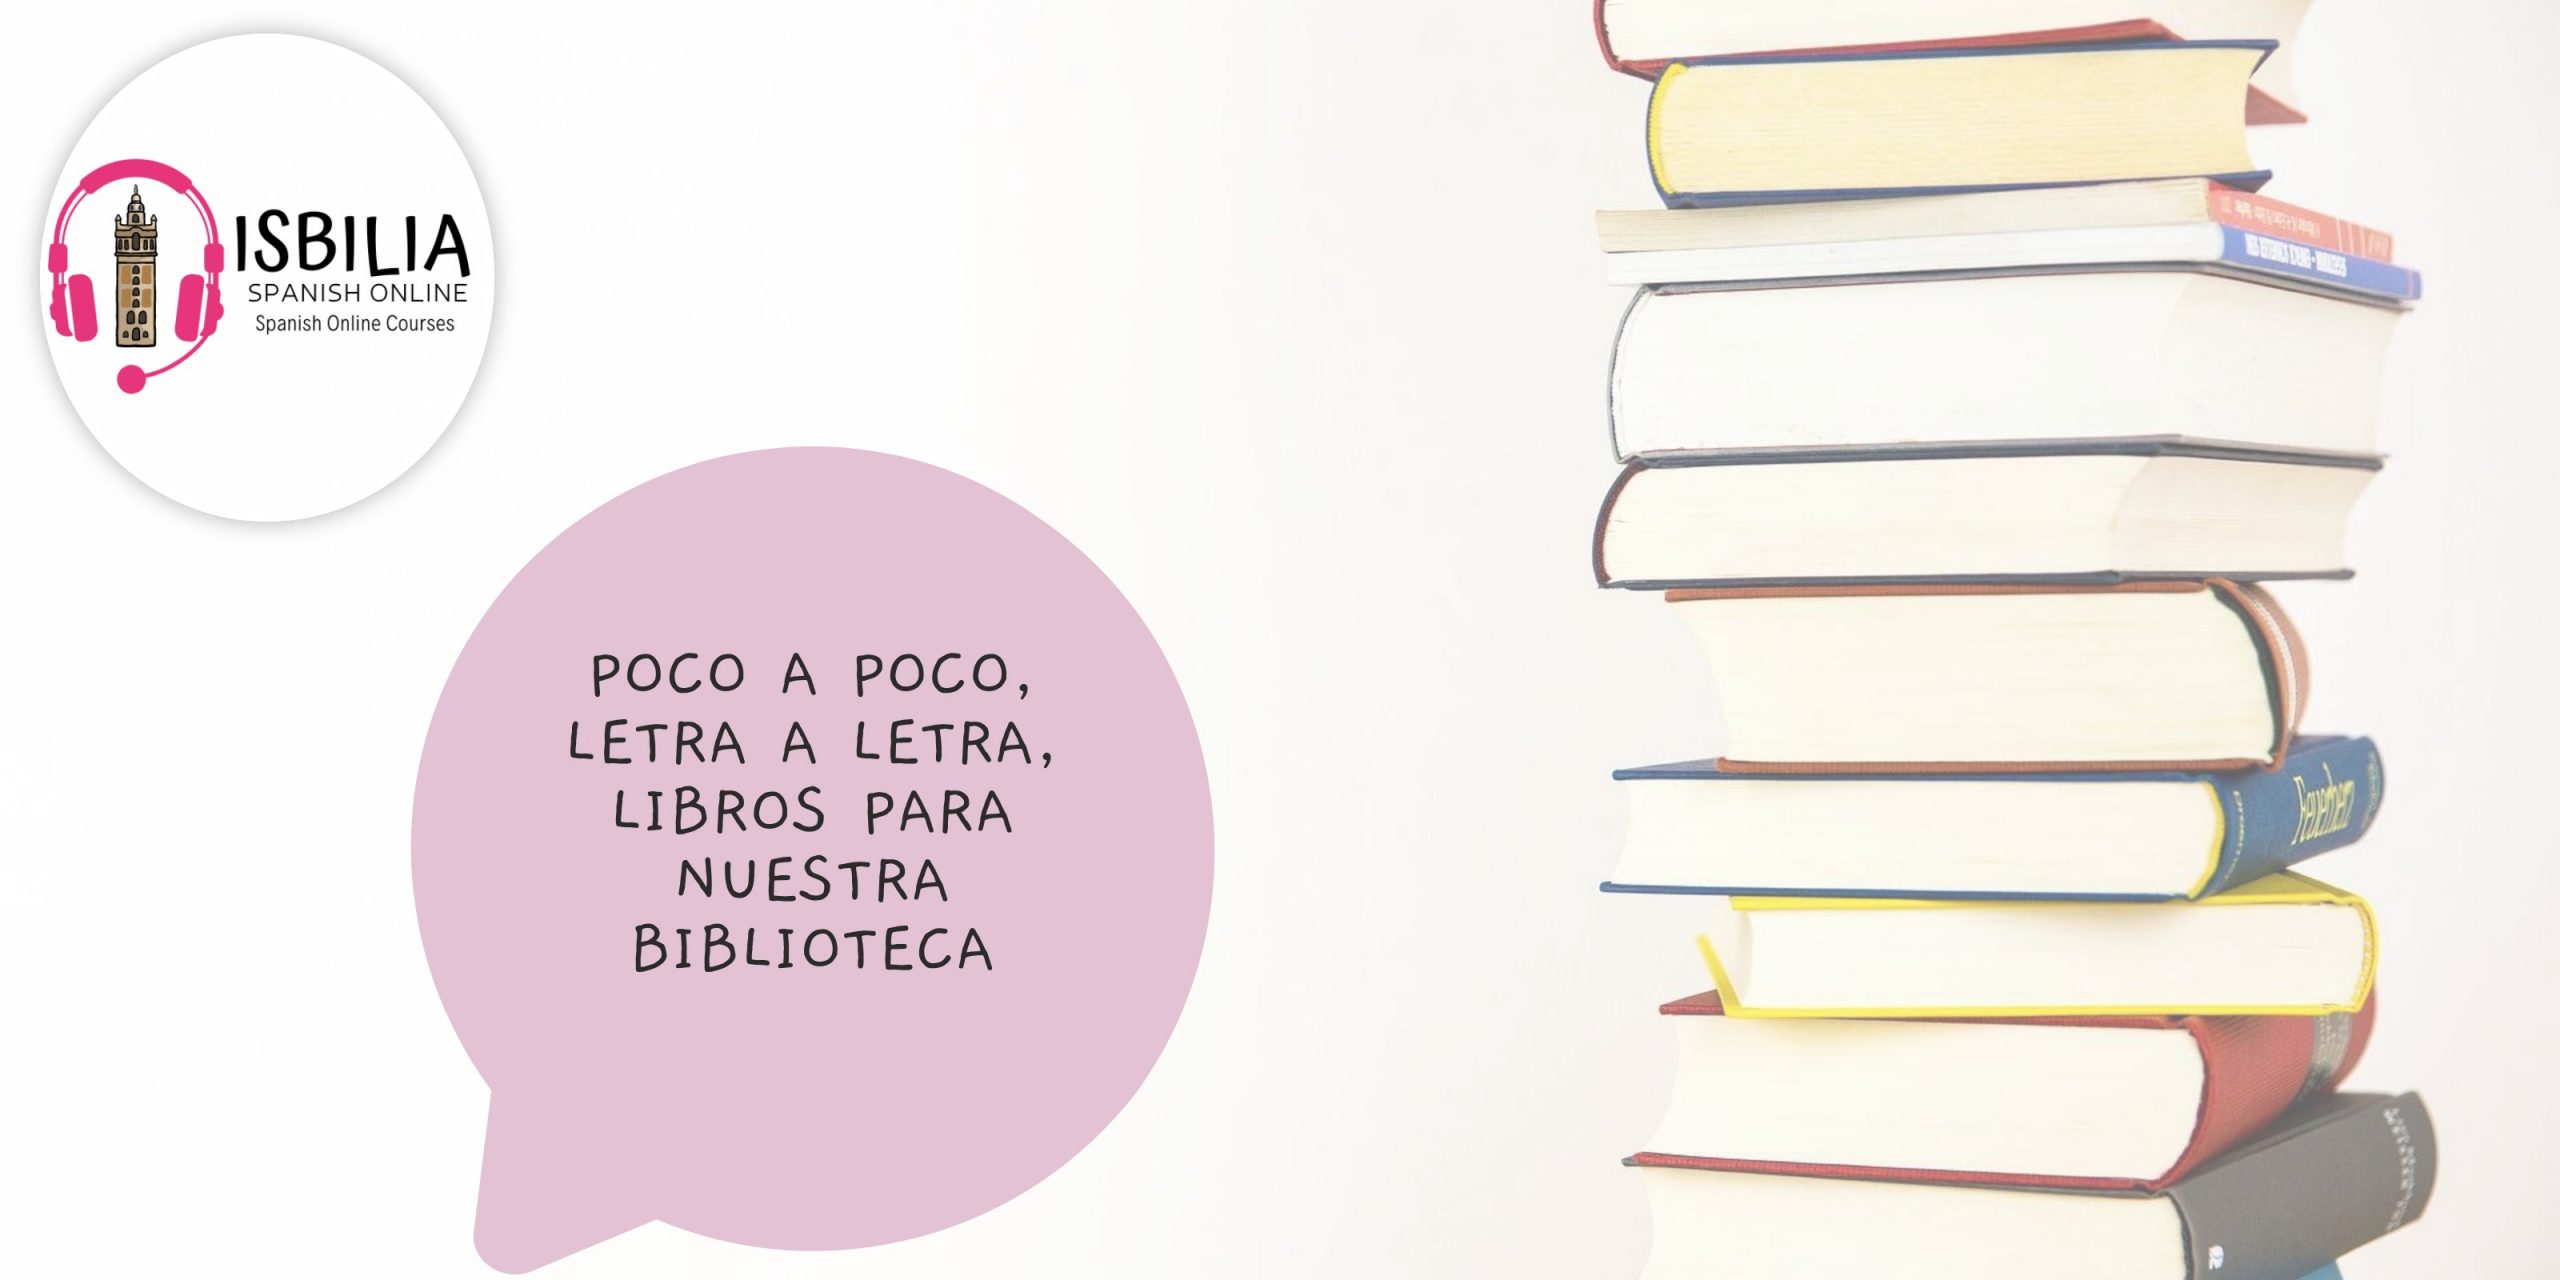 Libros en español con Isbilia Spanish Online.